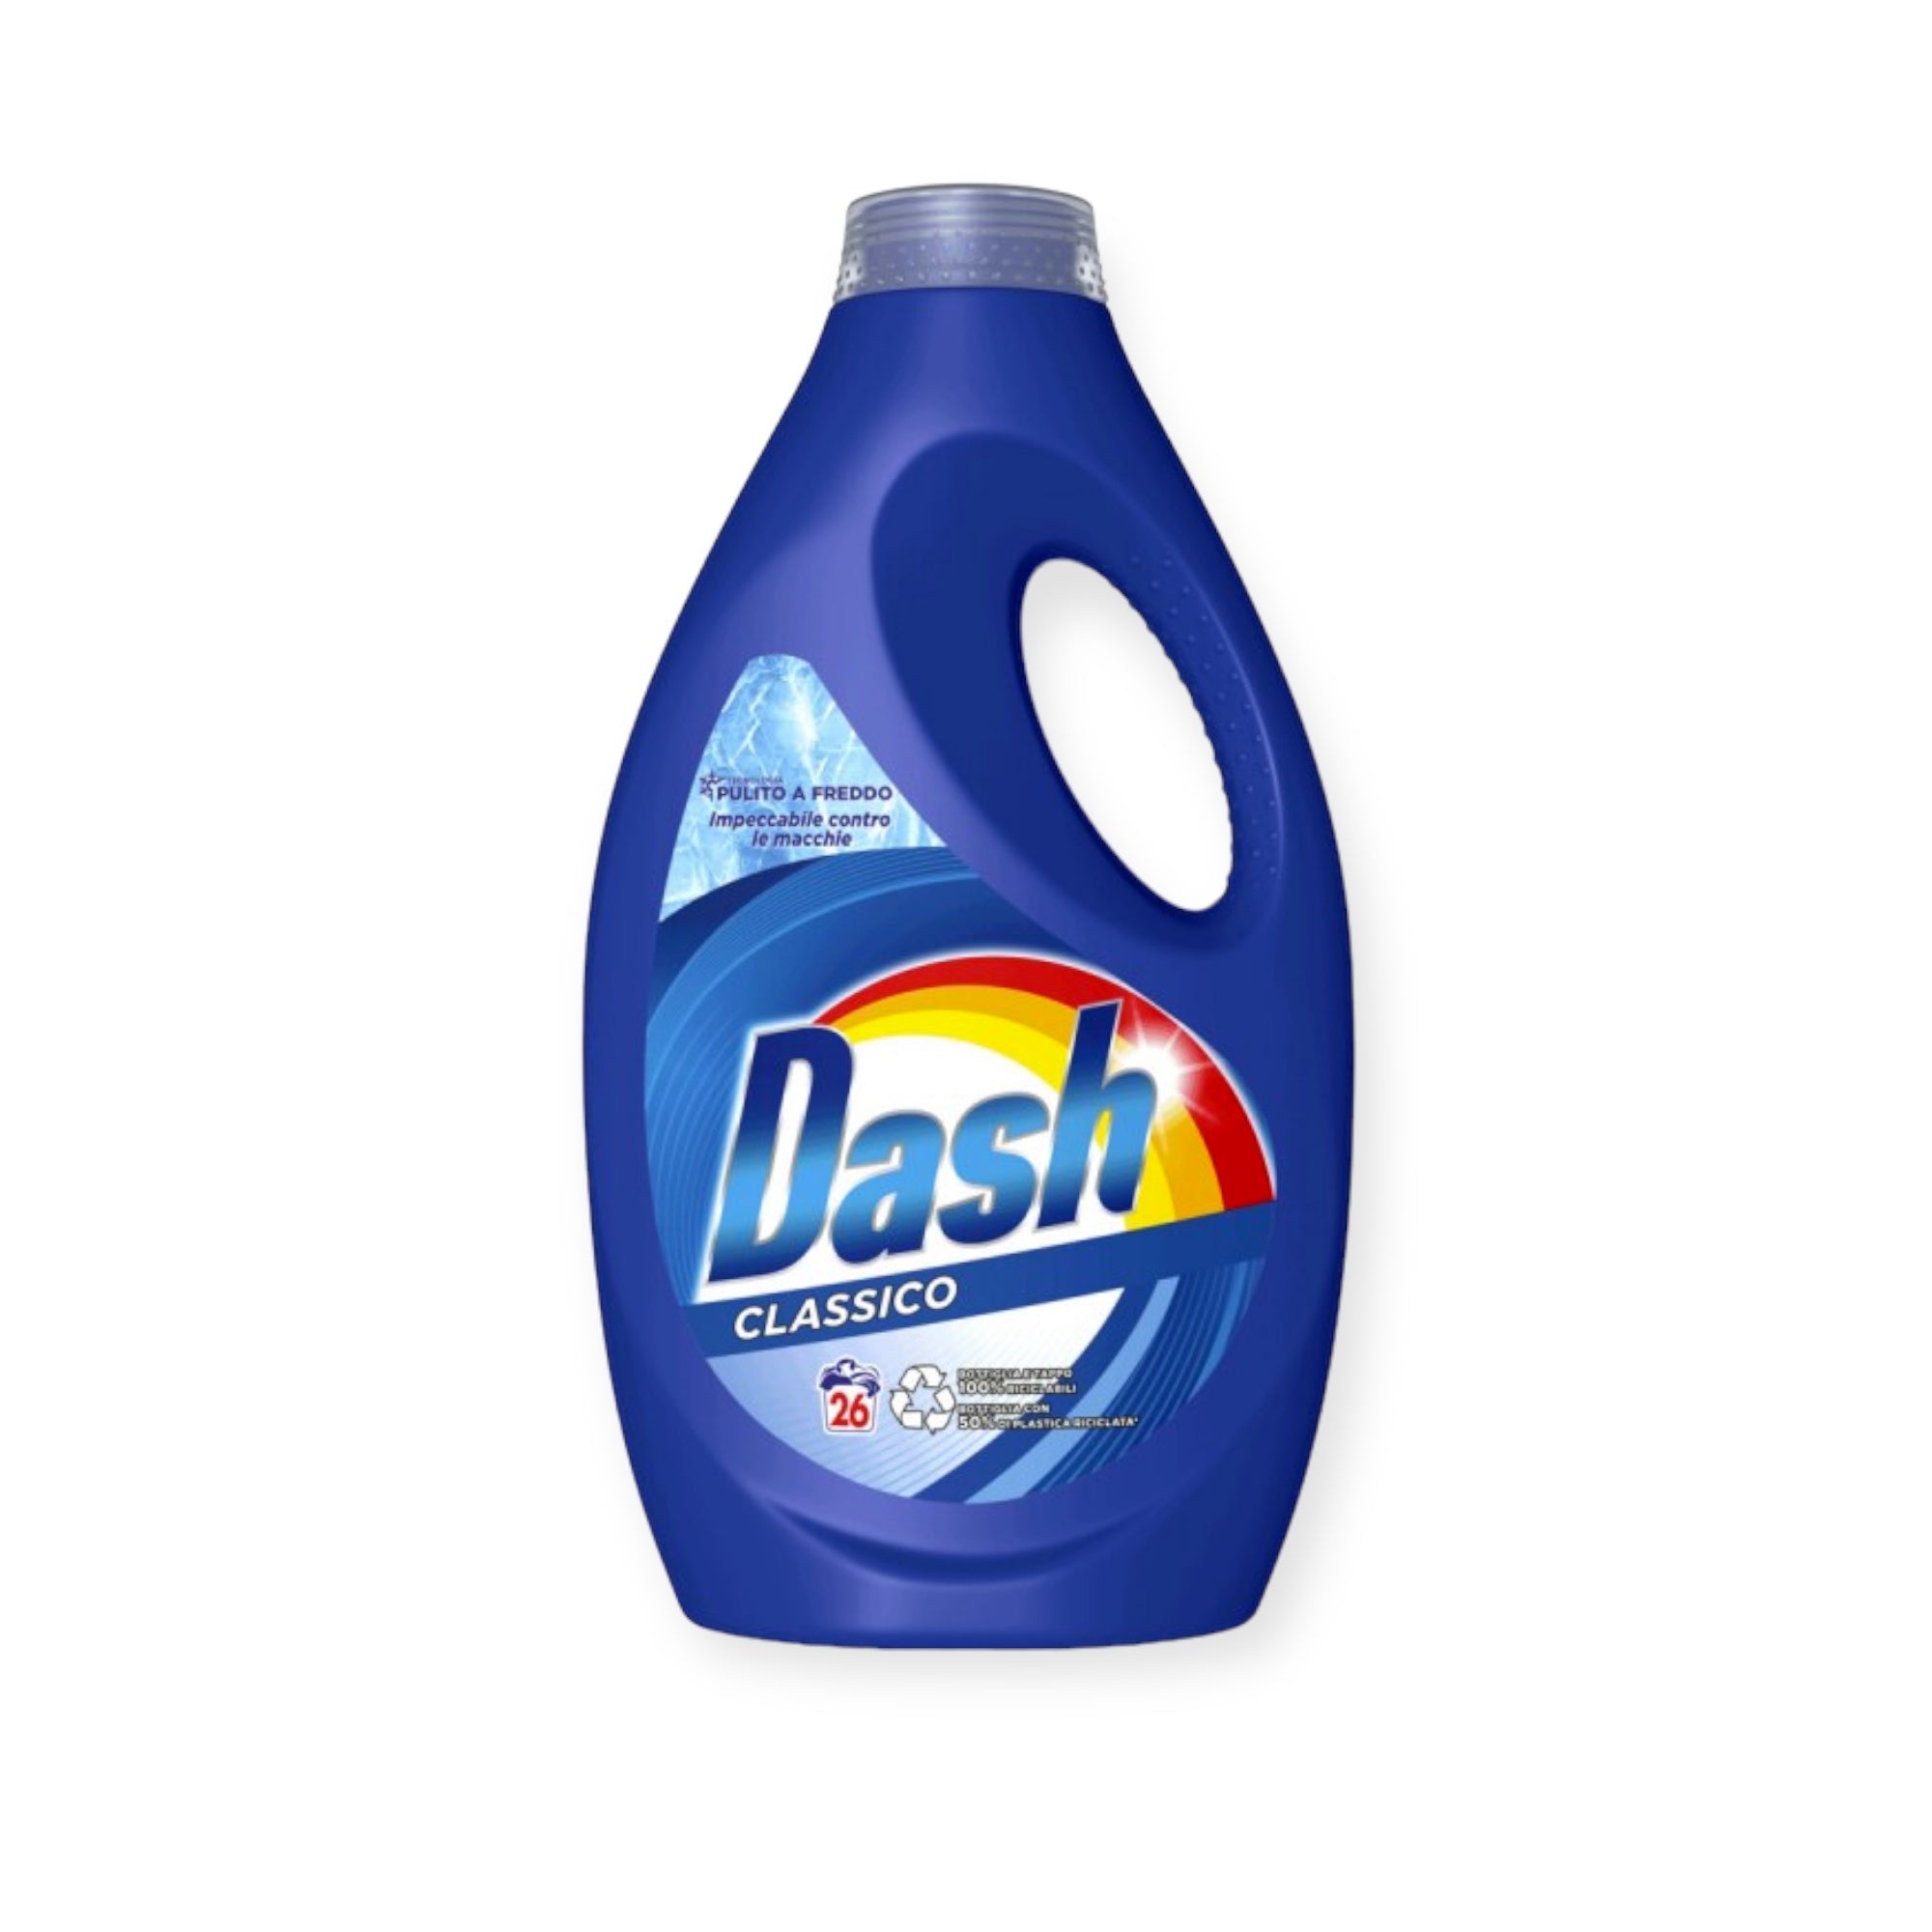 Dash Actilift Classic 1650ml